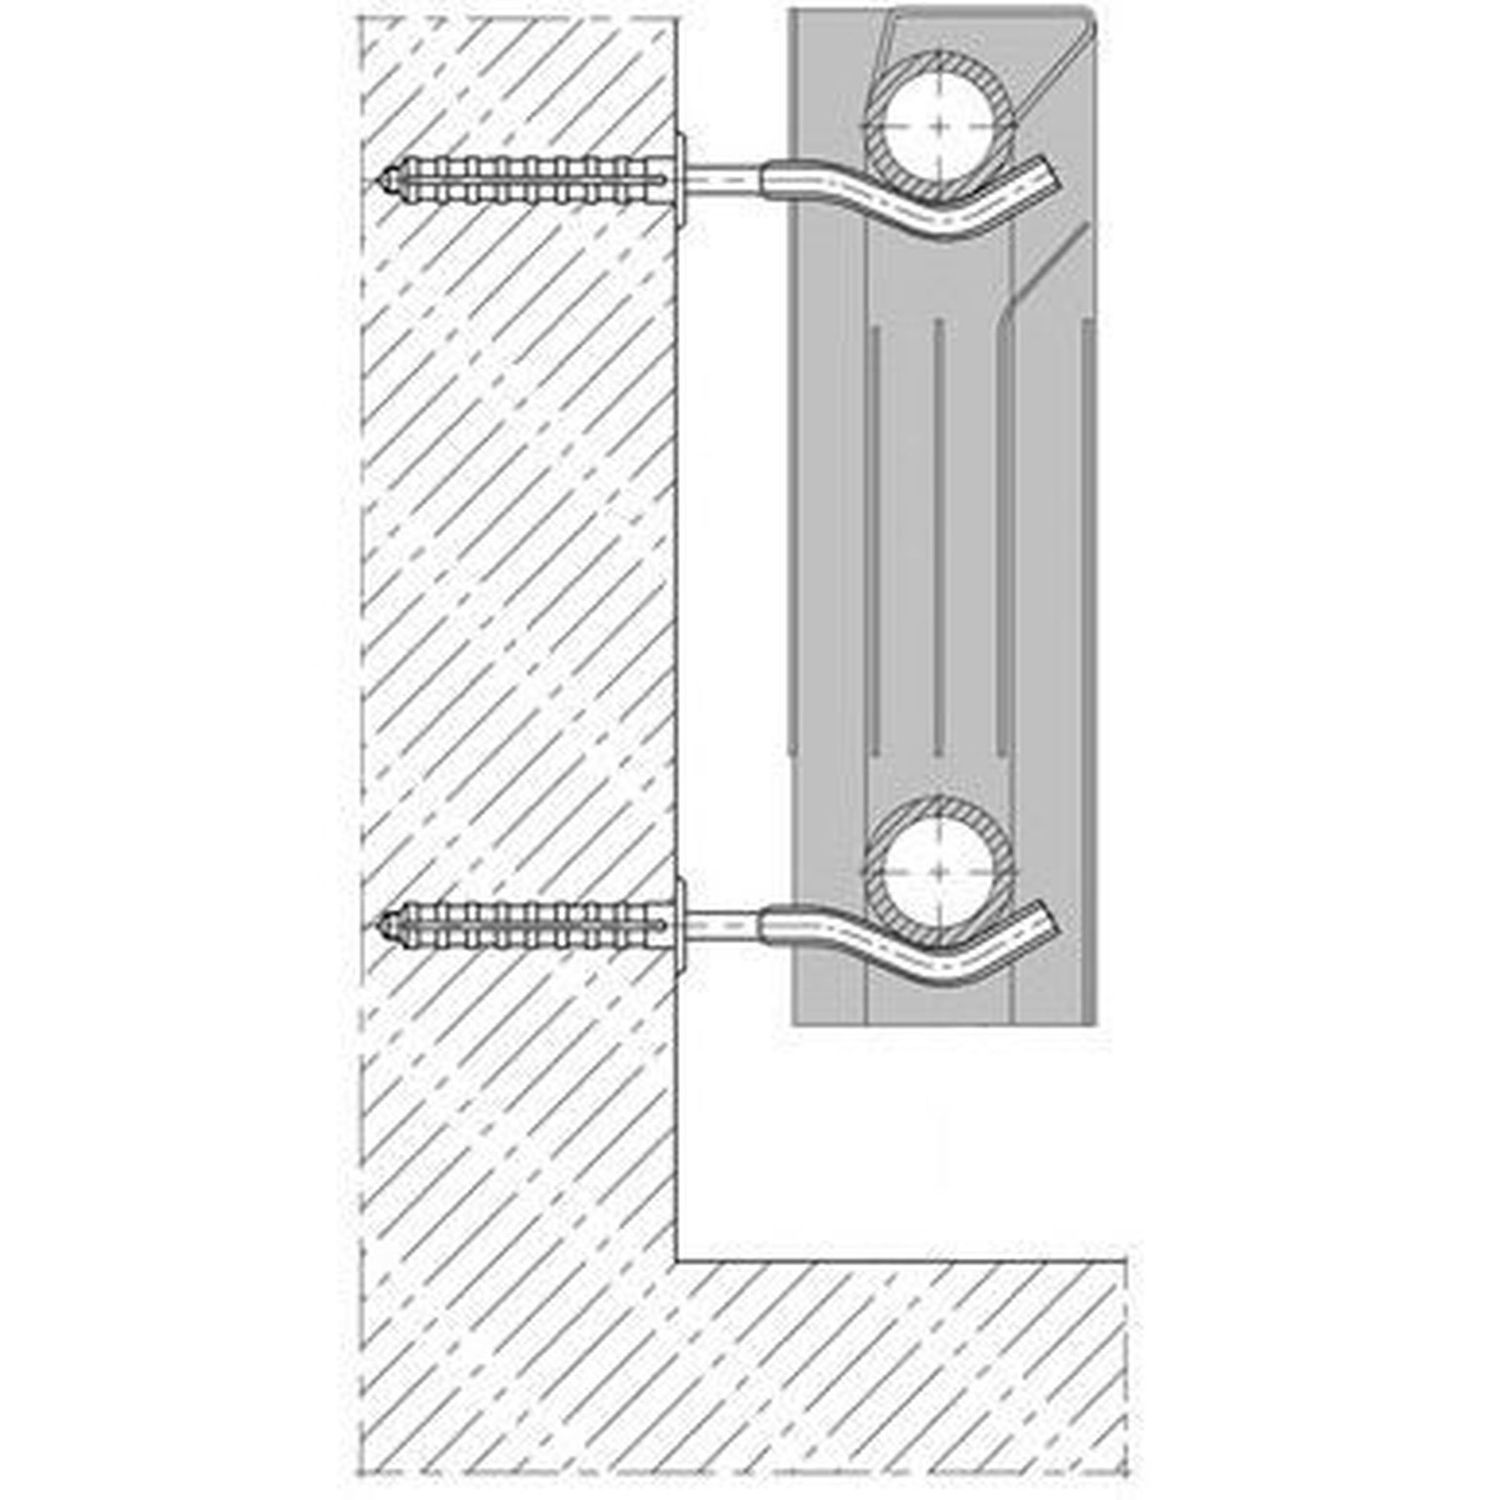 Комплект кронштейнов радиатора CRISTAL NR-1016 штырьковый прорезиненный с дюбелем Ø9х245мм (пара -4 единицы)